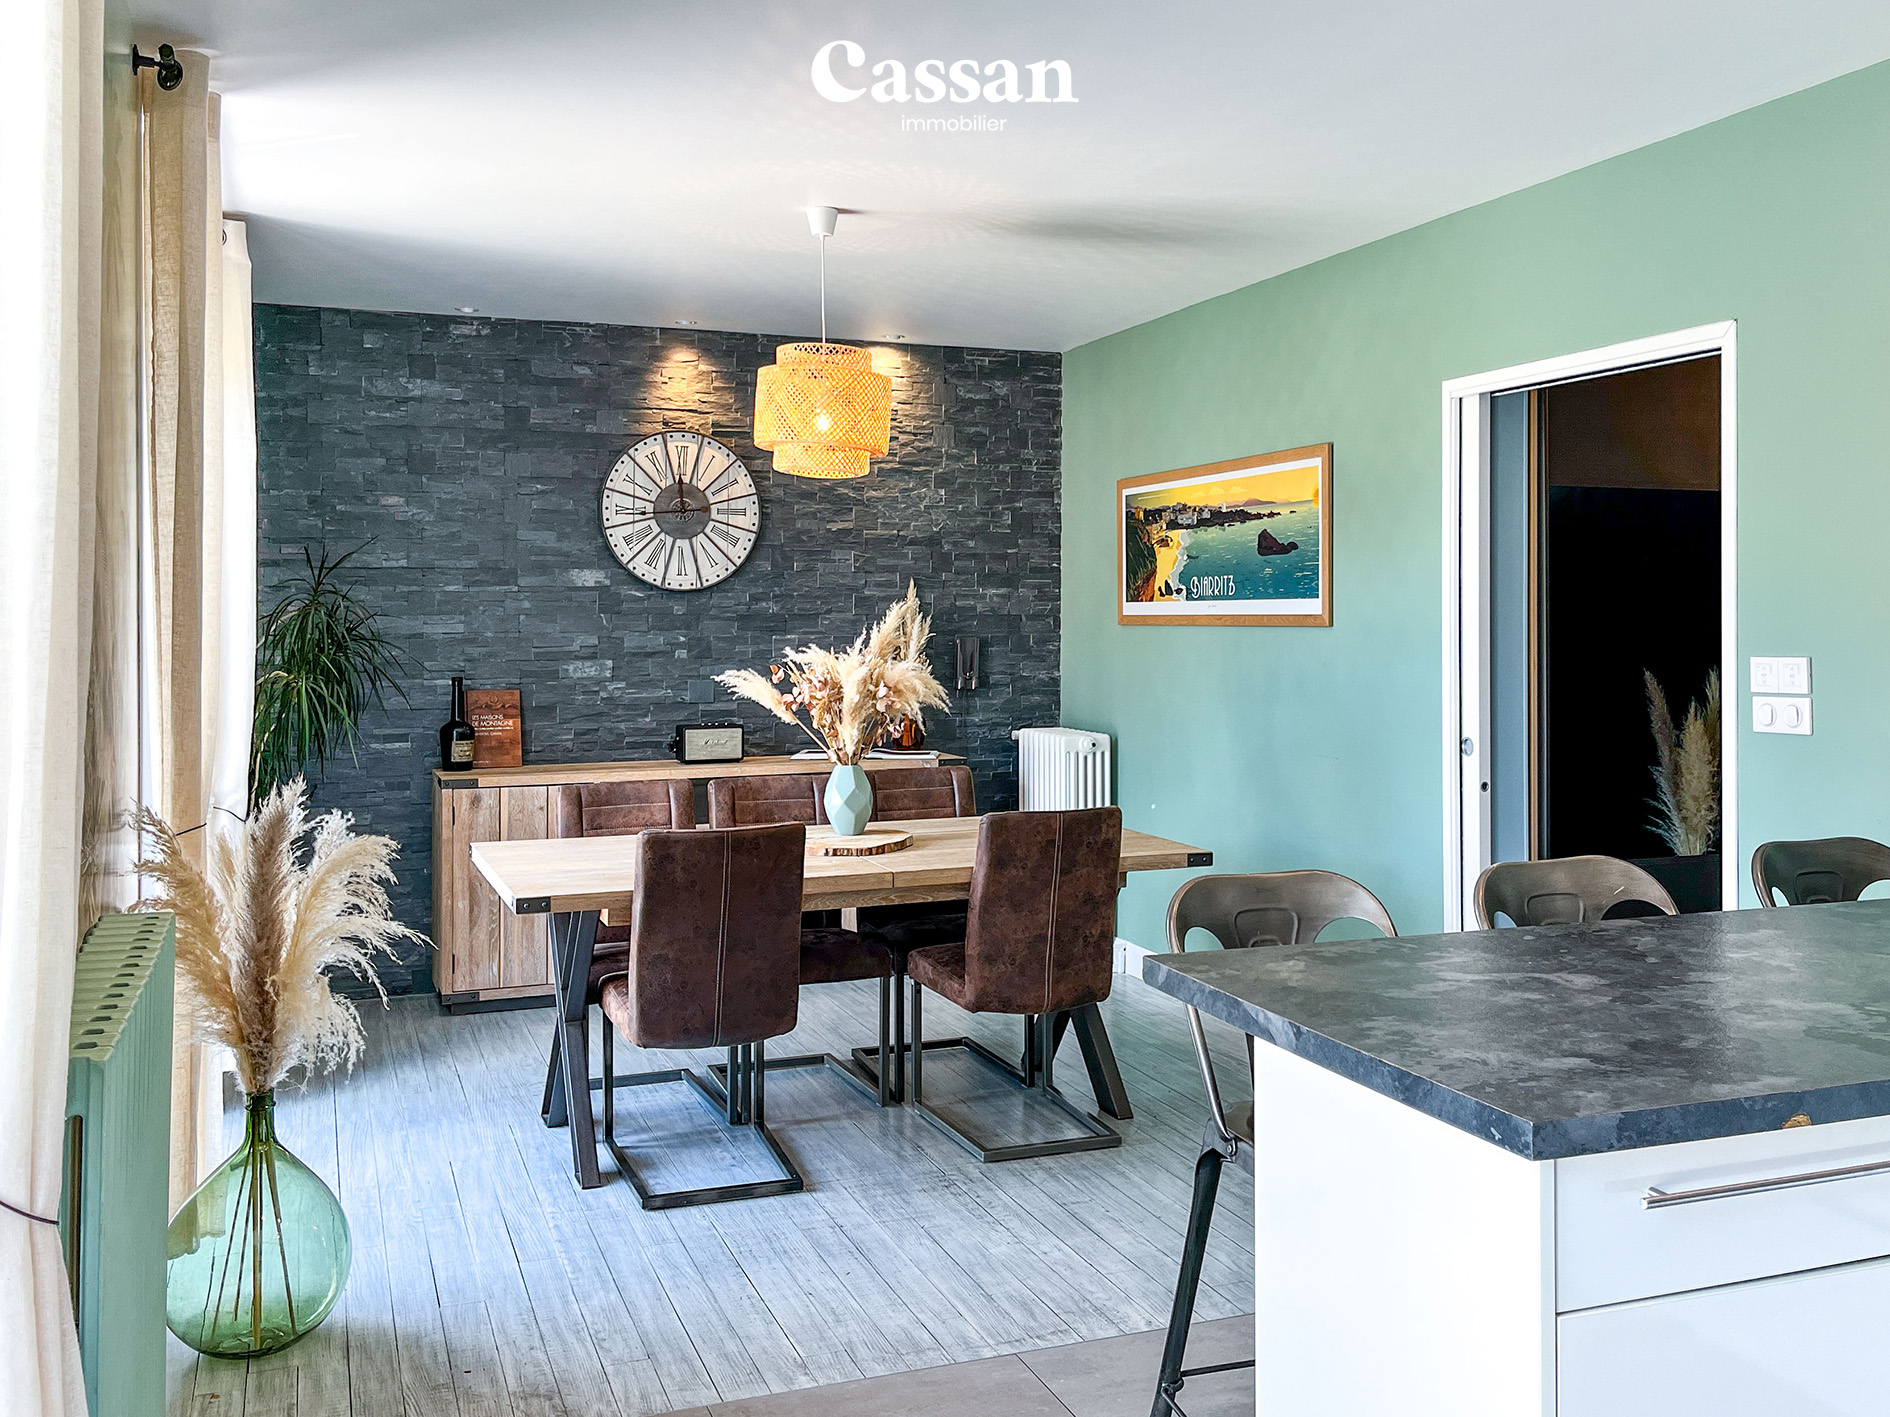 Cuisine salle à manger maison à vendre Aurillac Cassan immobilier